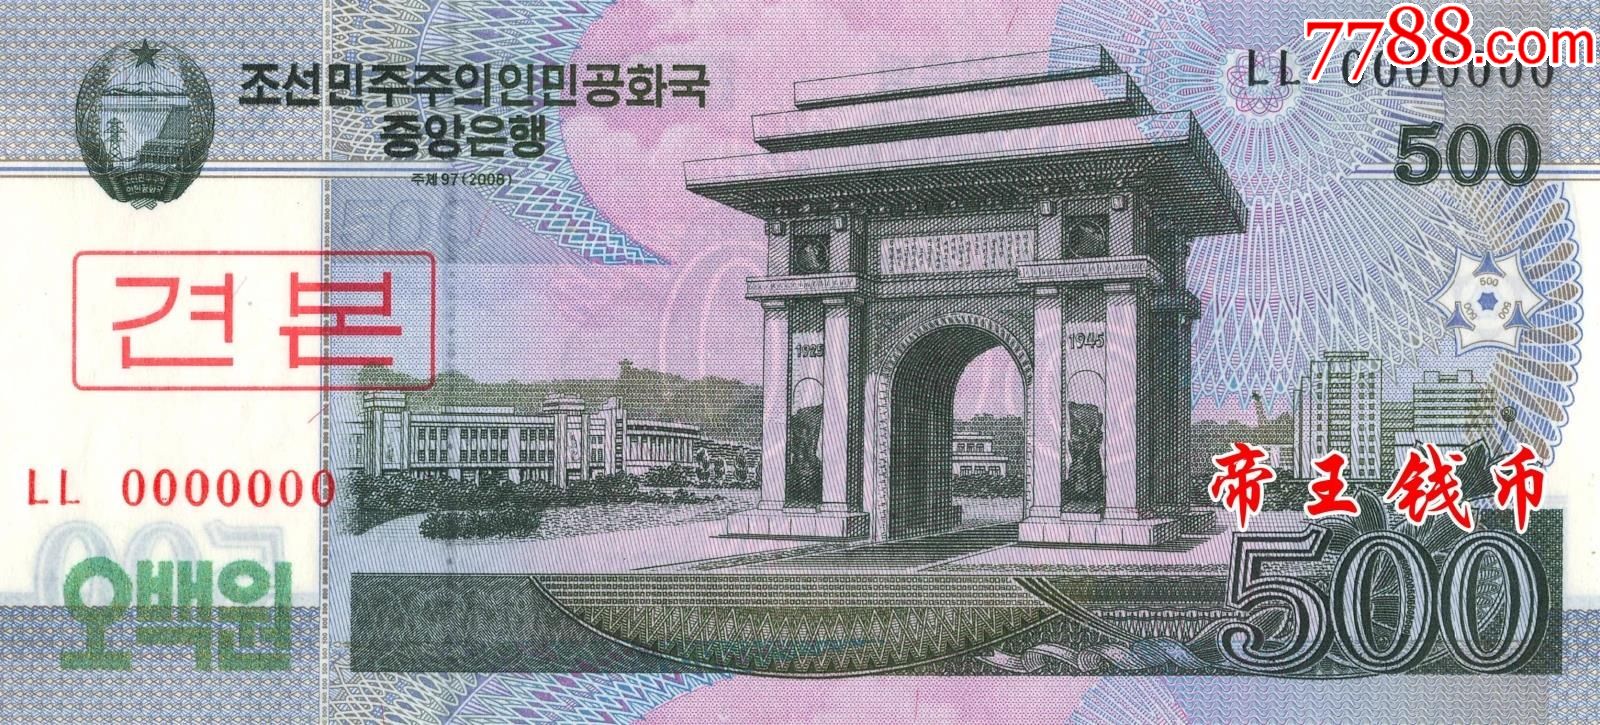 全新unc朝鲜500元样票(凯旋门)2008年版本藏品为:朝鲜2008年